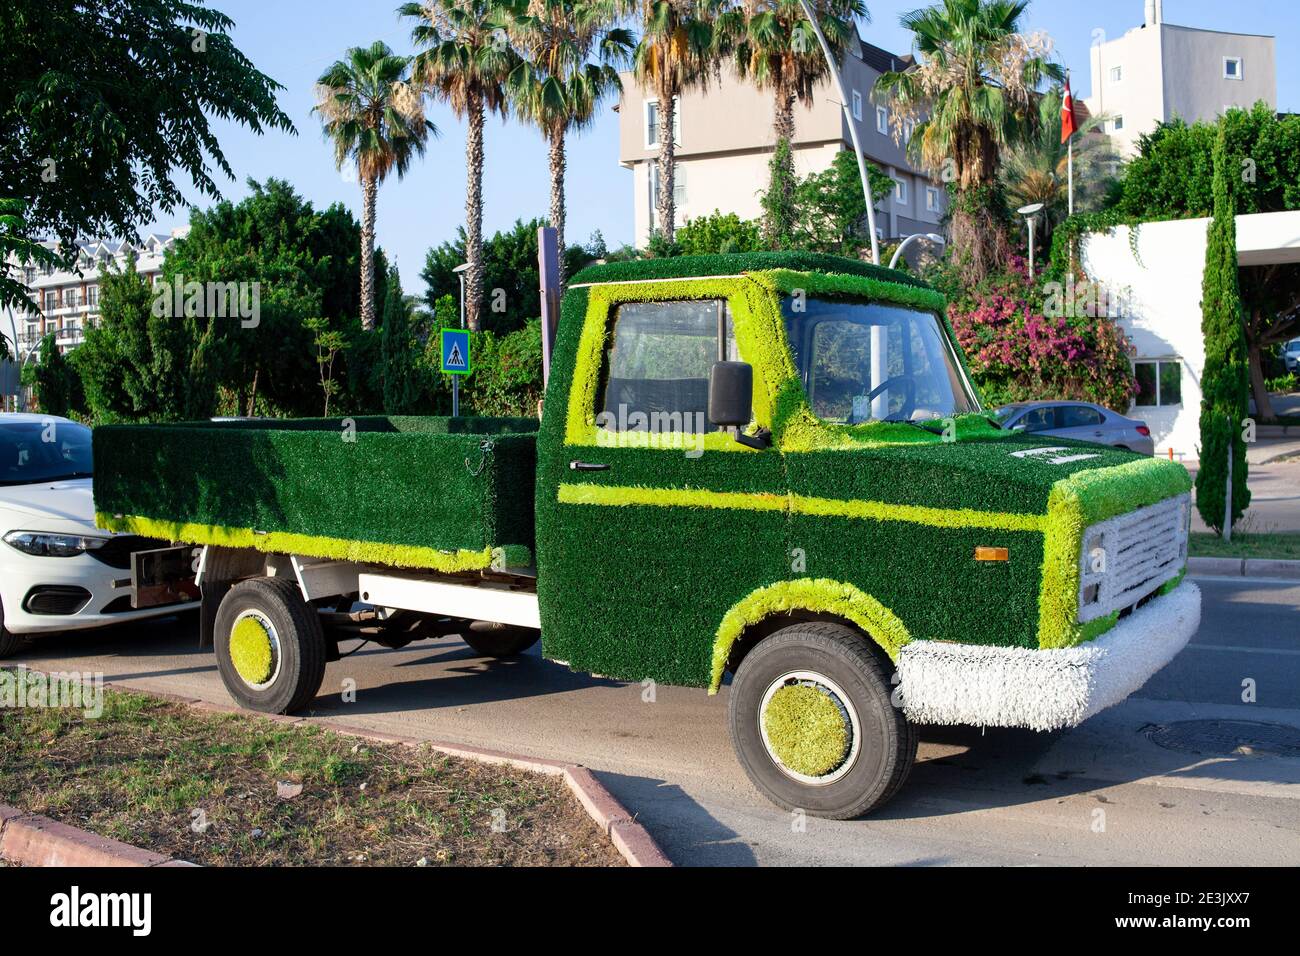 voiture de camion décorée herbe verte artificielle. Concept d'économie d'énergie, transport durable, écologie de sauvegarde Banque D'Images